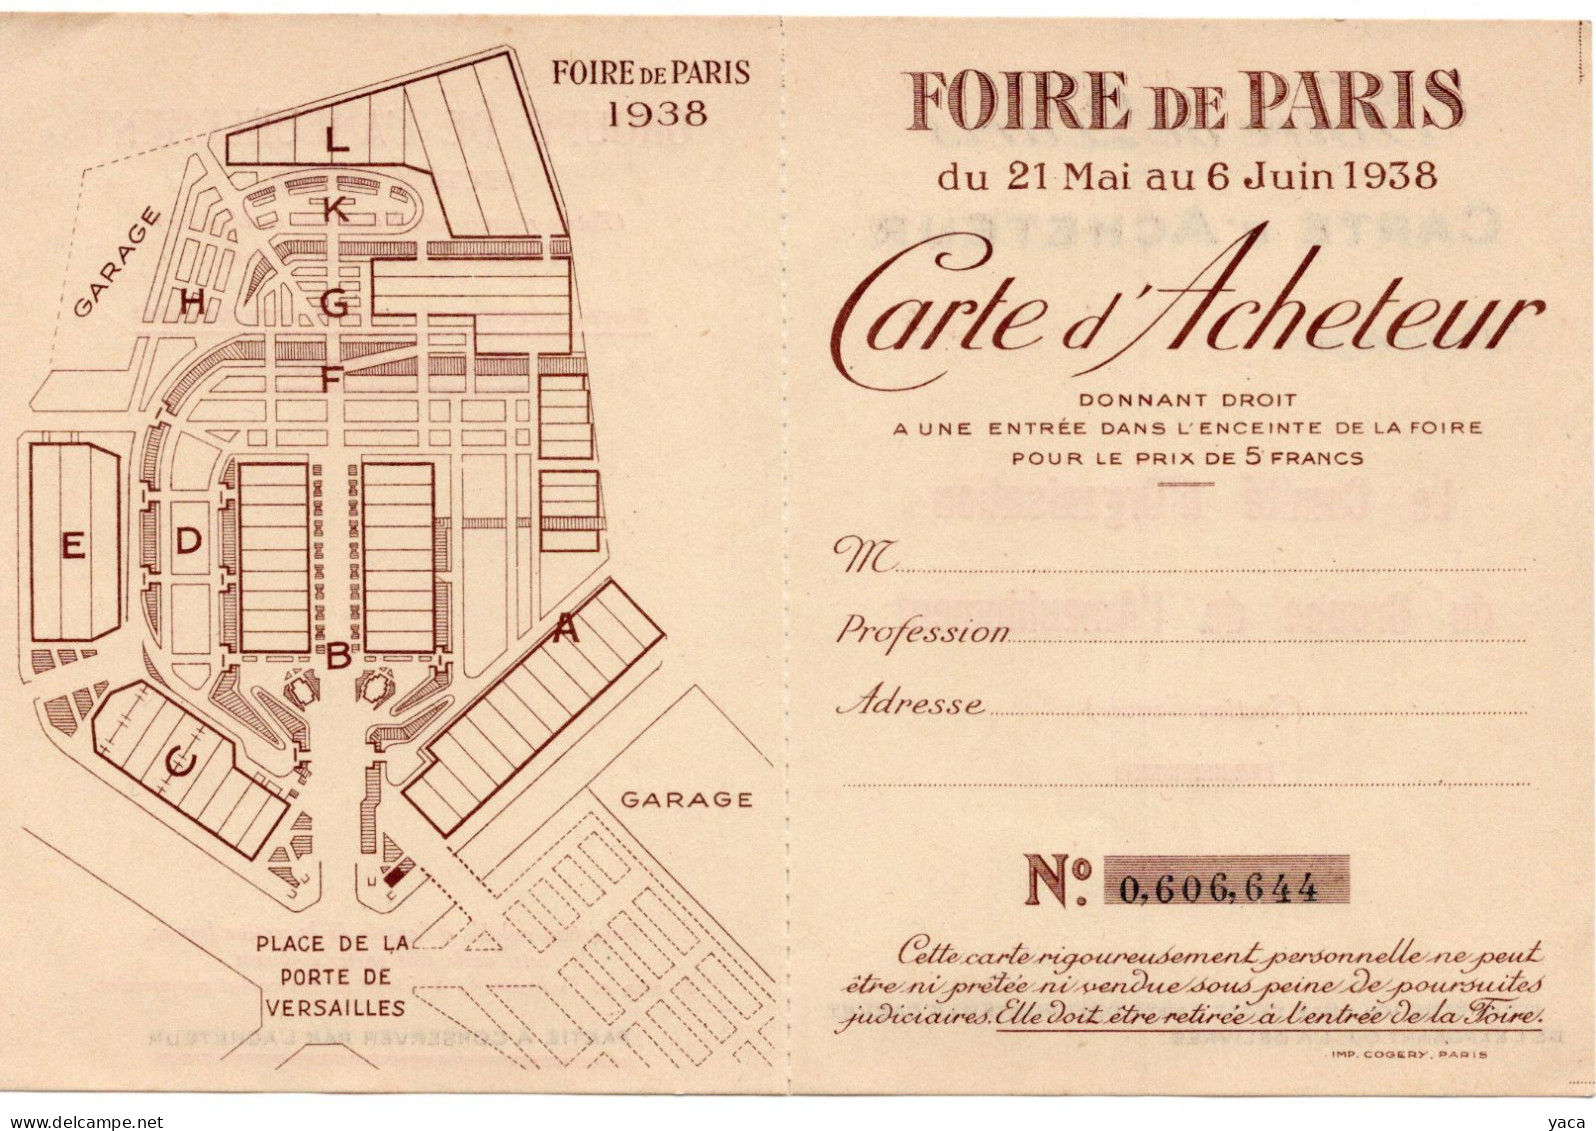 Foire De Paris 1938 - Carte Acheteur - Biglietti D'ingresso